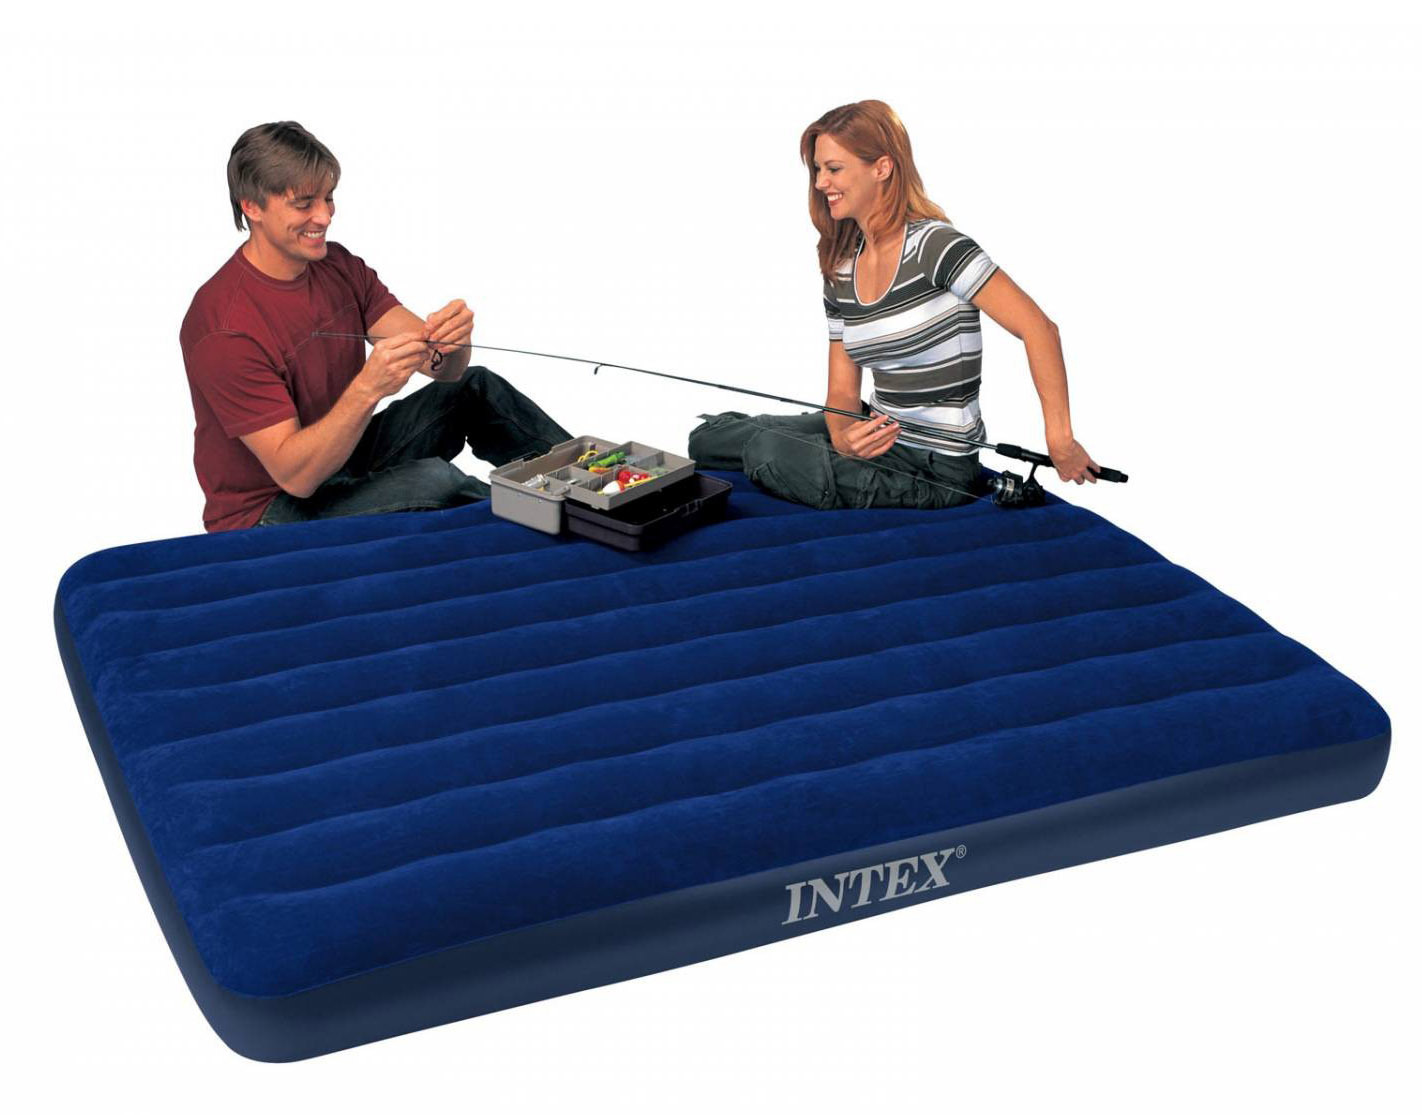 intex queen inflatable air mattress built in pillows